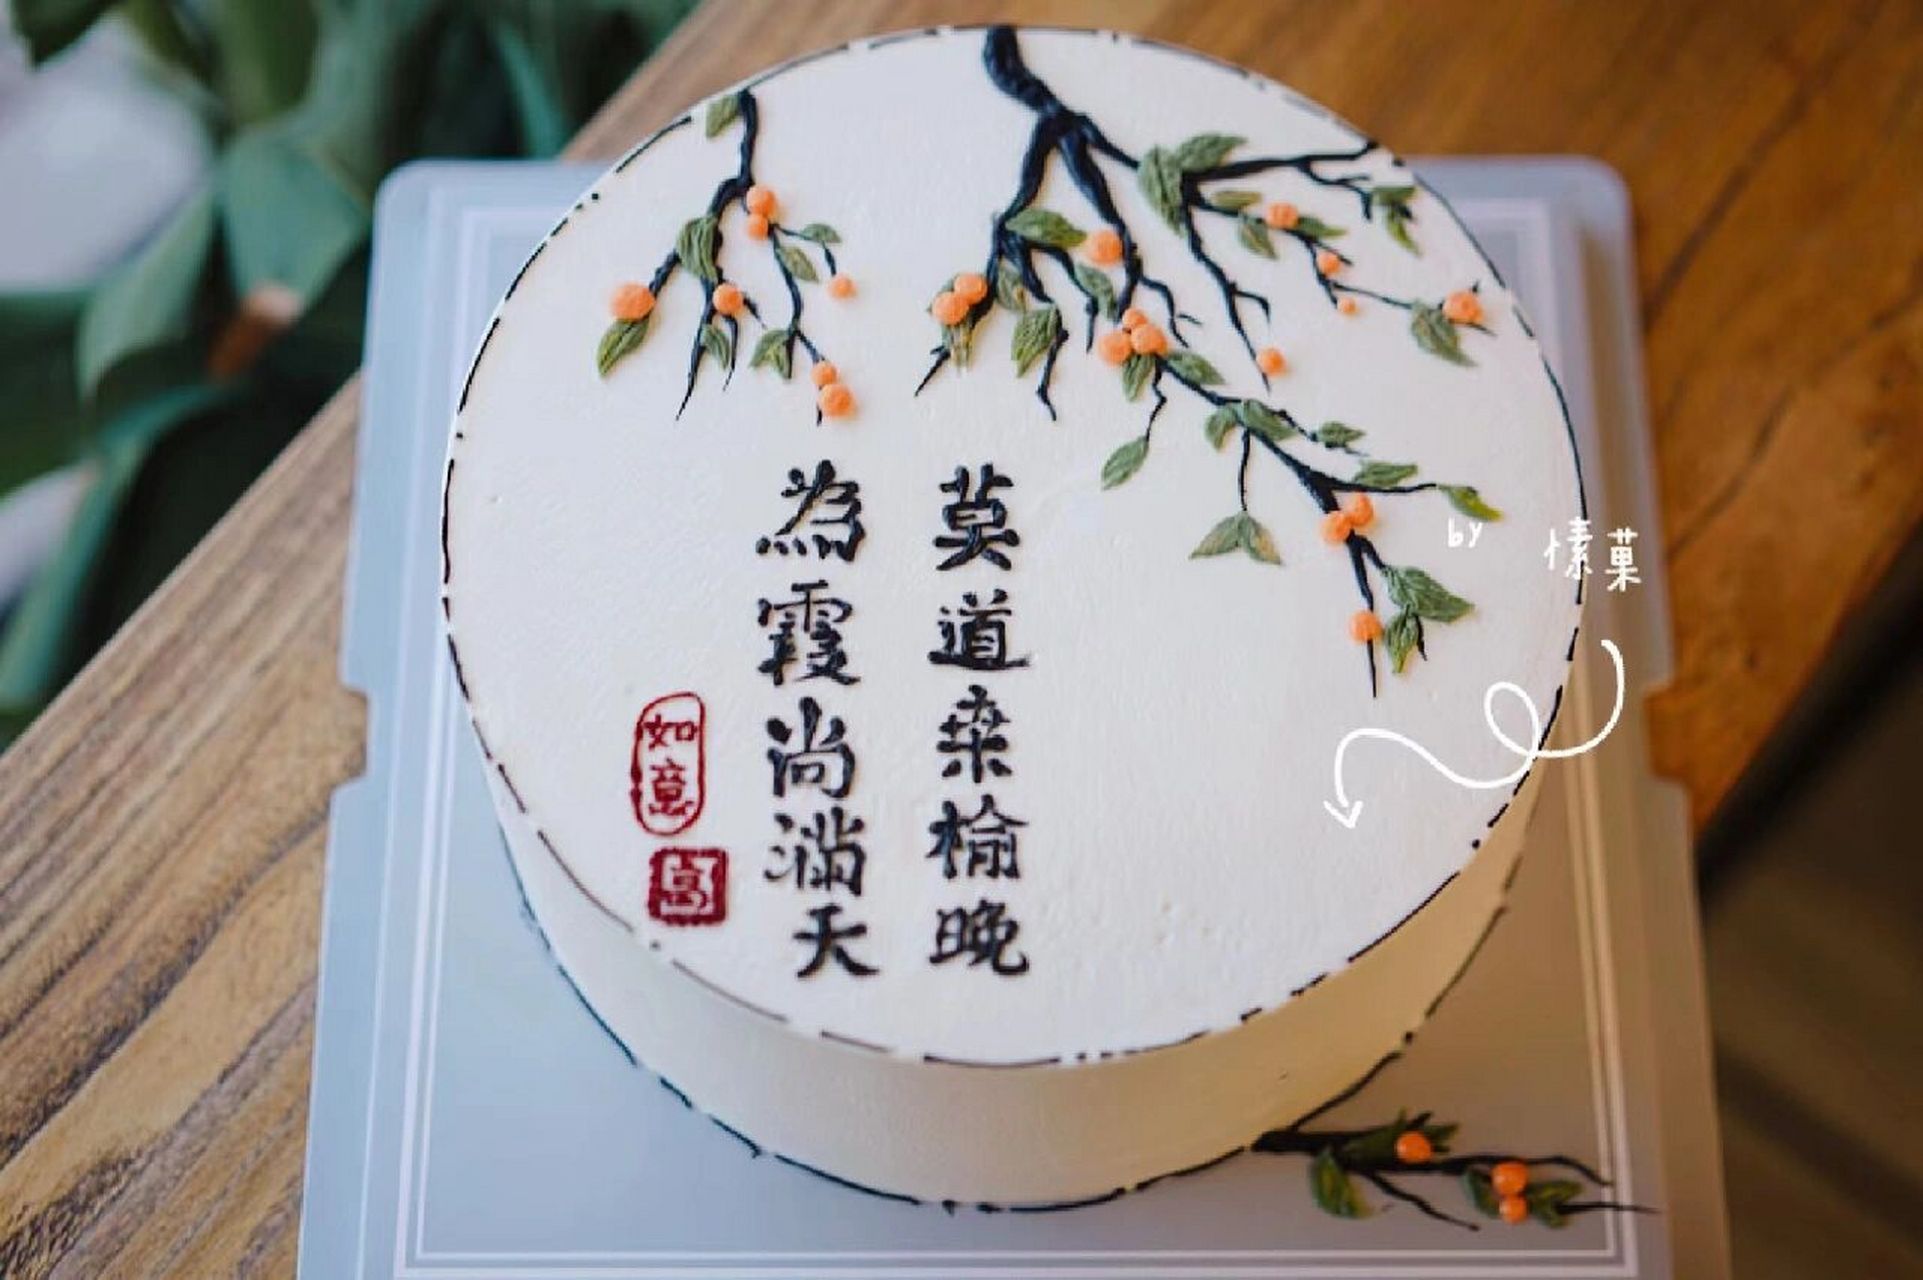 教师退休蛋糕祝福语图片